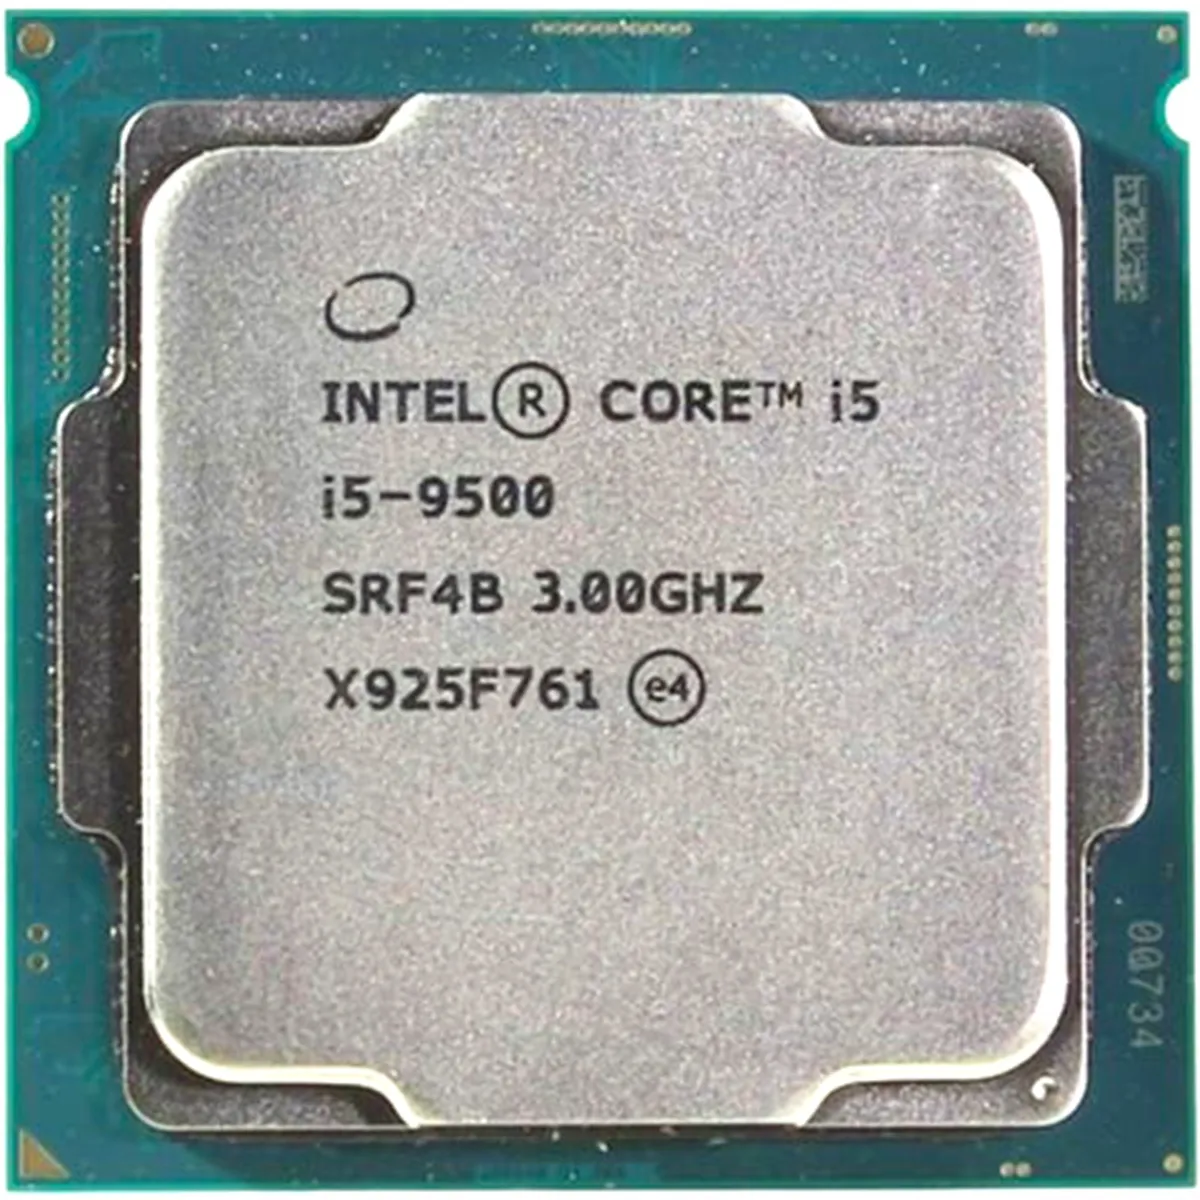 Intel Core i5-9500 (SRF4B) 6-Core 3.00GHz LGA1151 9MB 65W CPU Processor